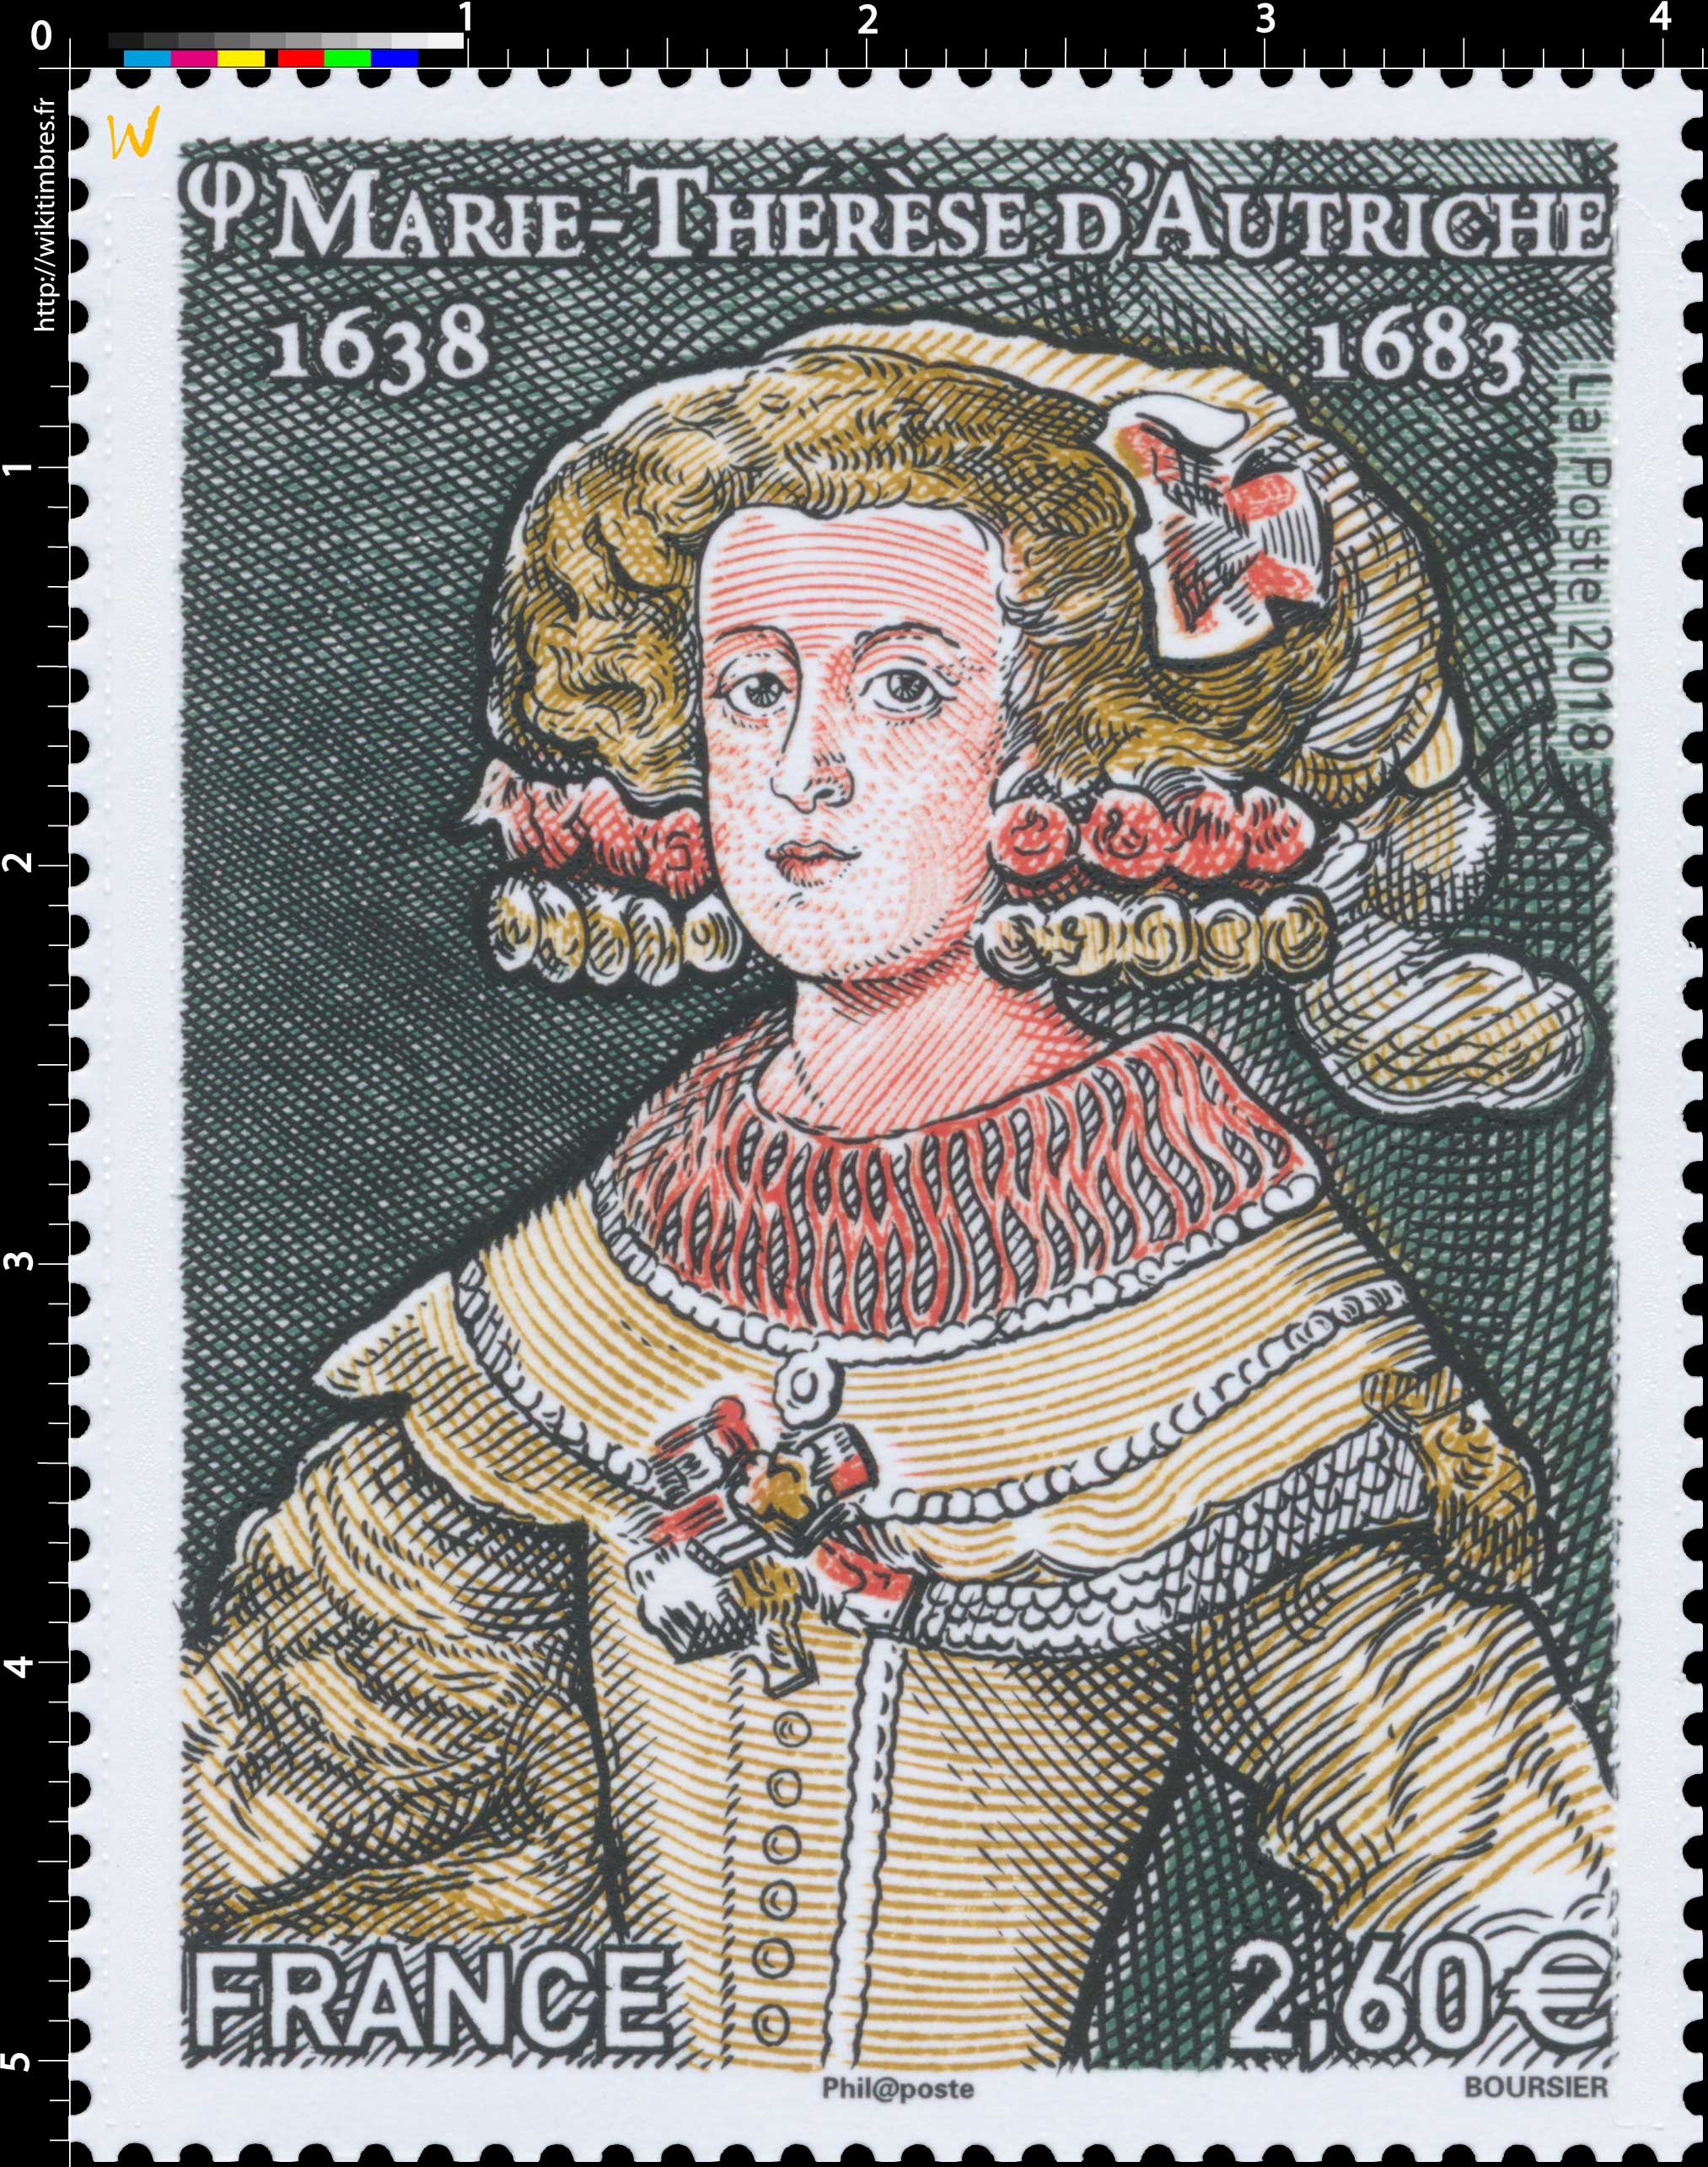 2018 Marie-Thérese d'Autriche 1638-1683